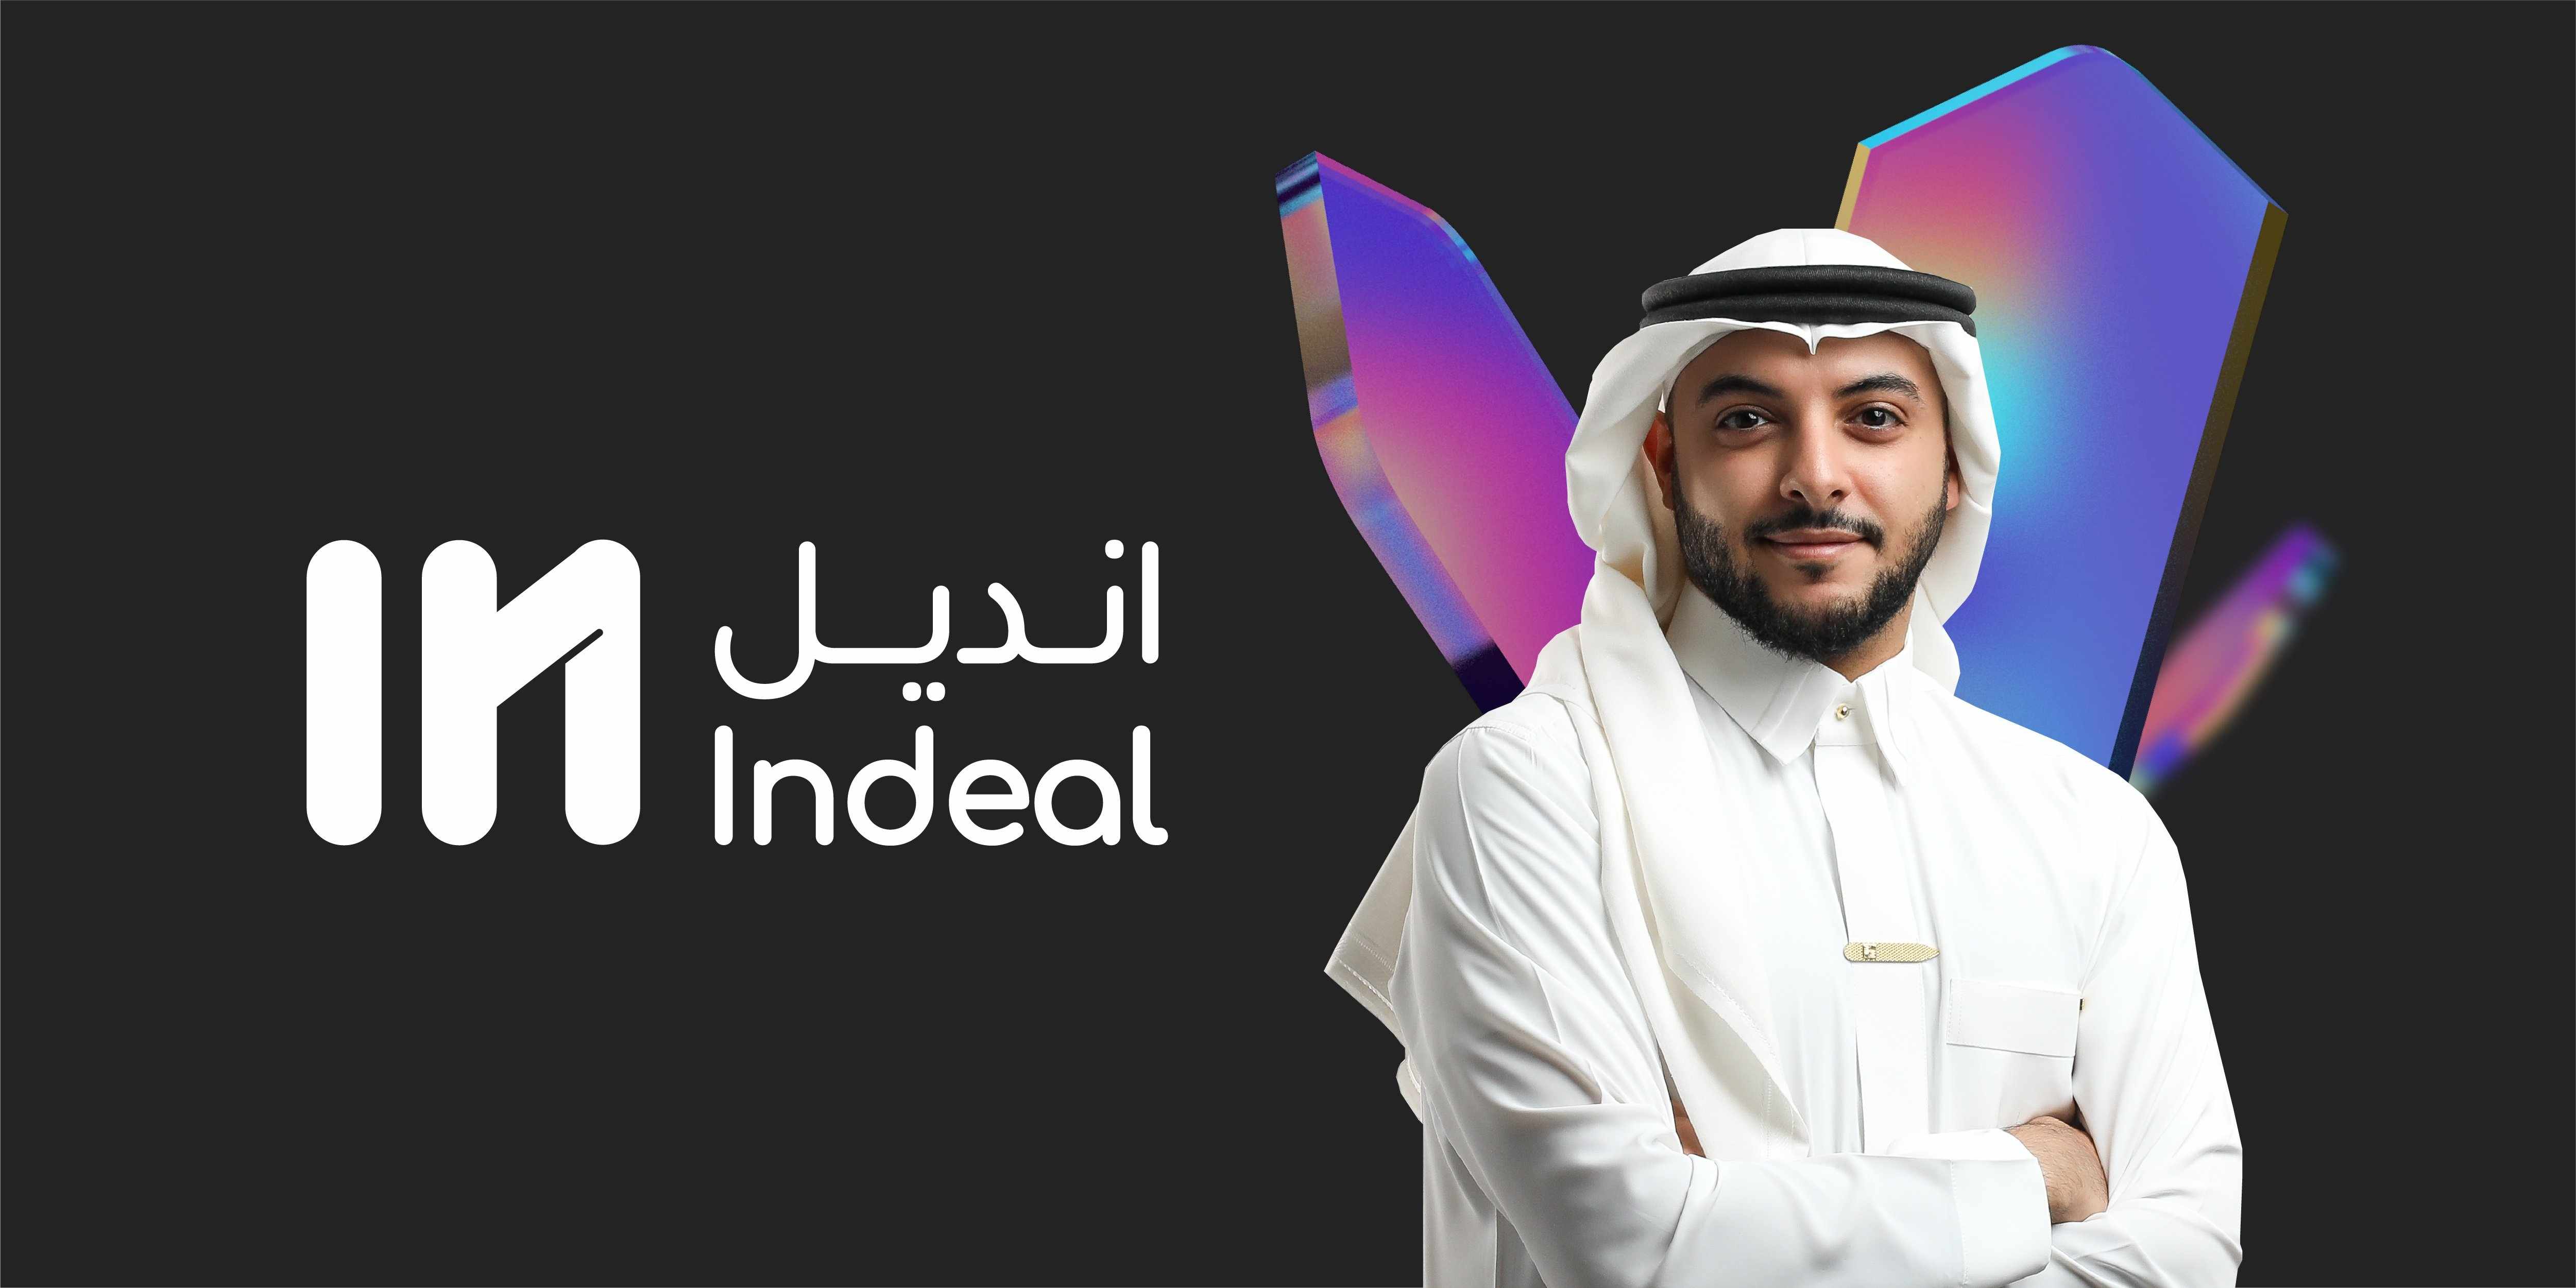 saudi,indeal,startup,market,commerce